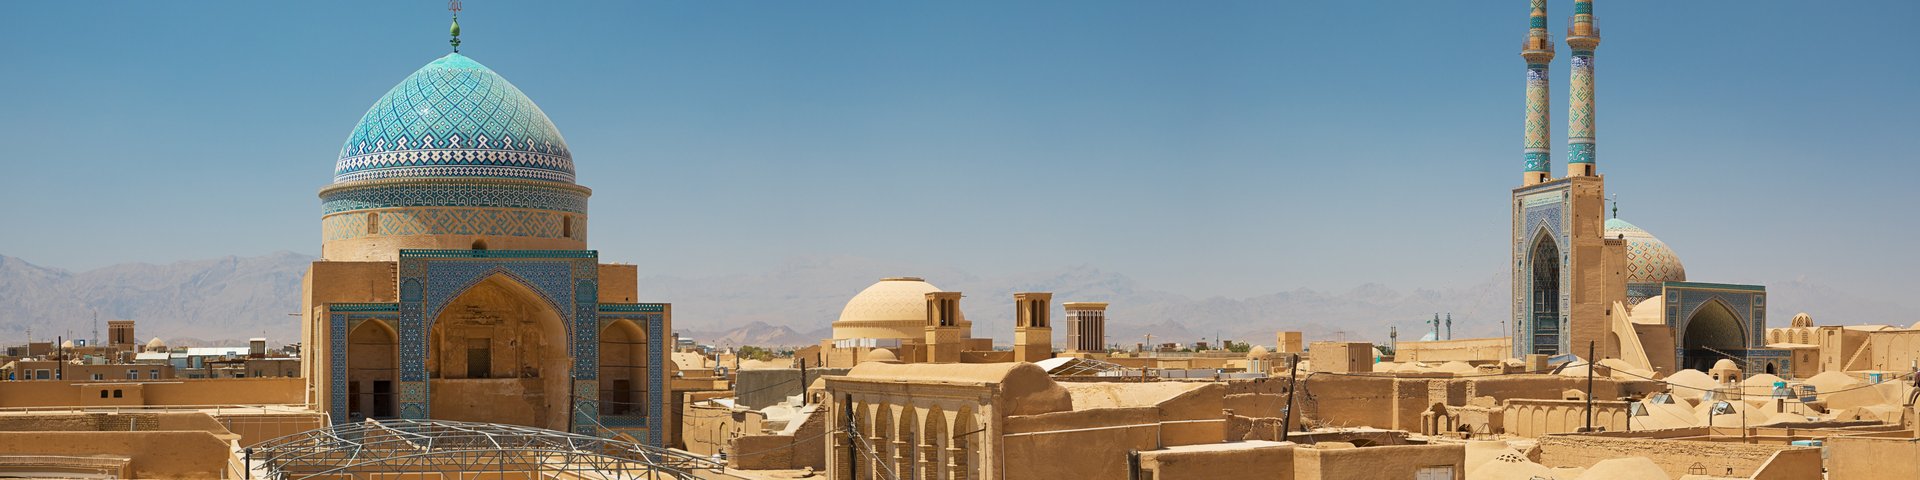 Blick auf über die Dächer von Yazd hin zur Moschee